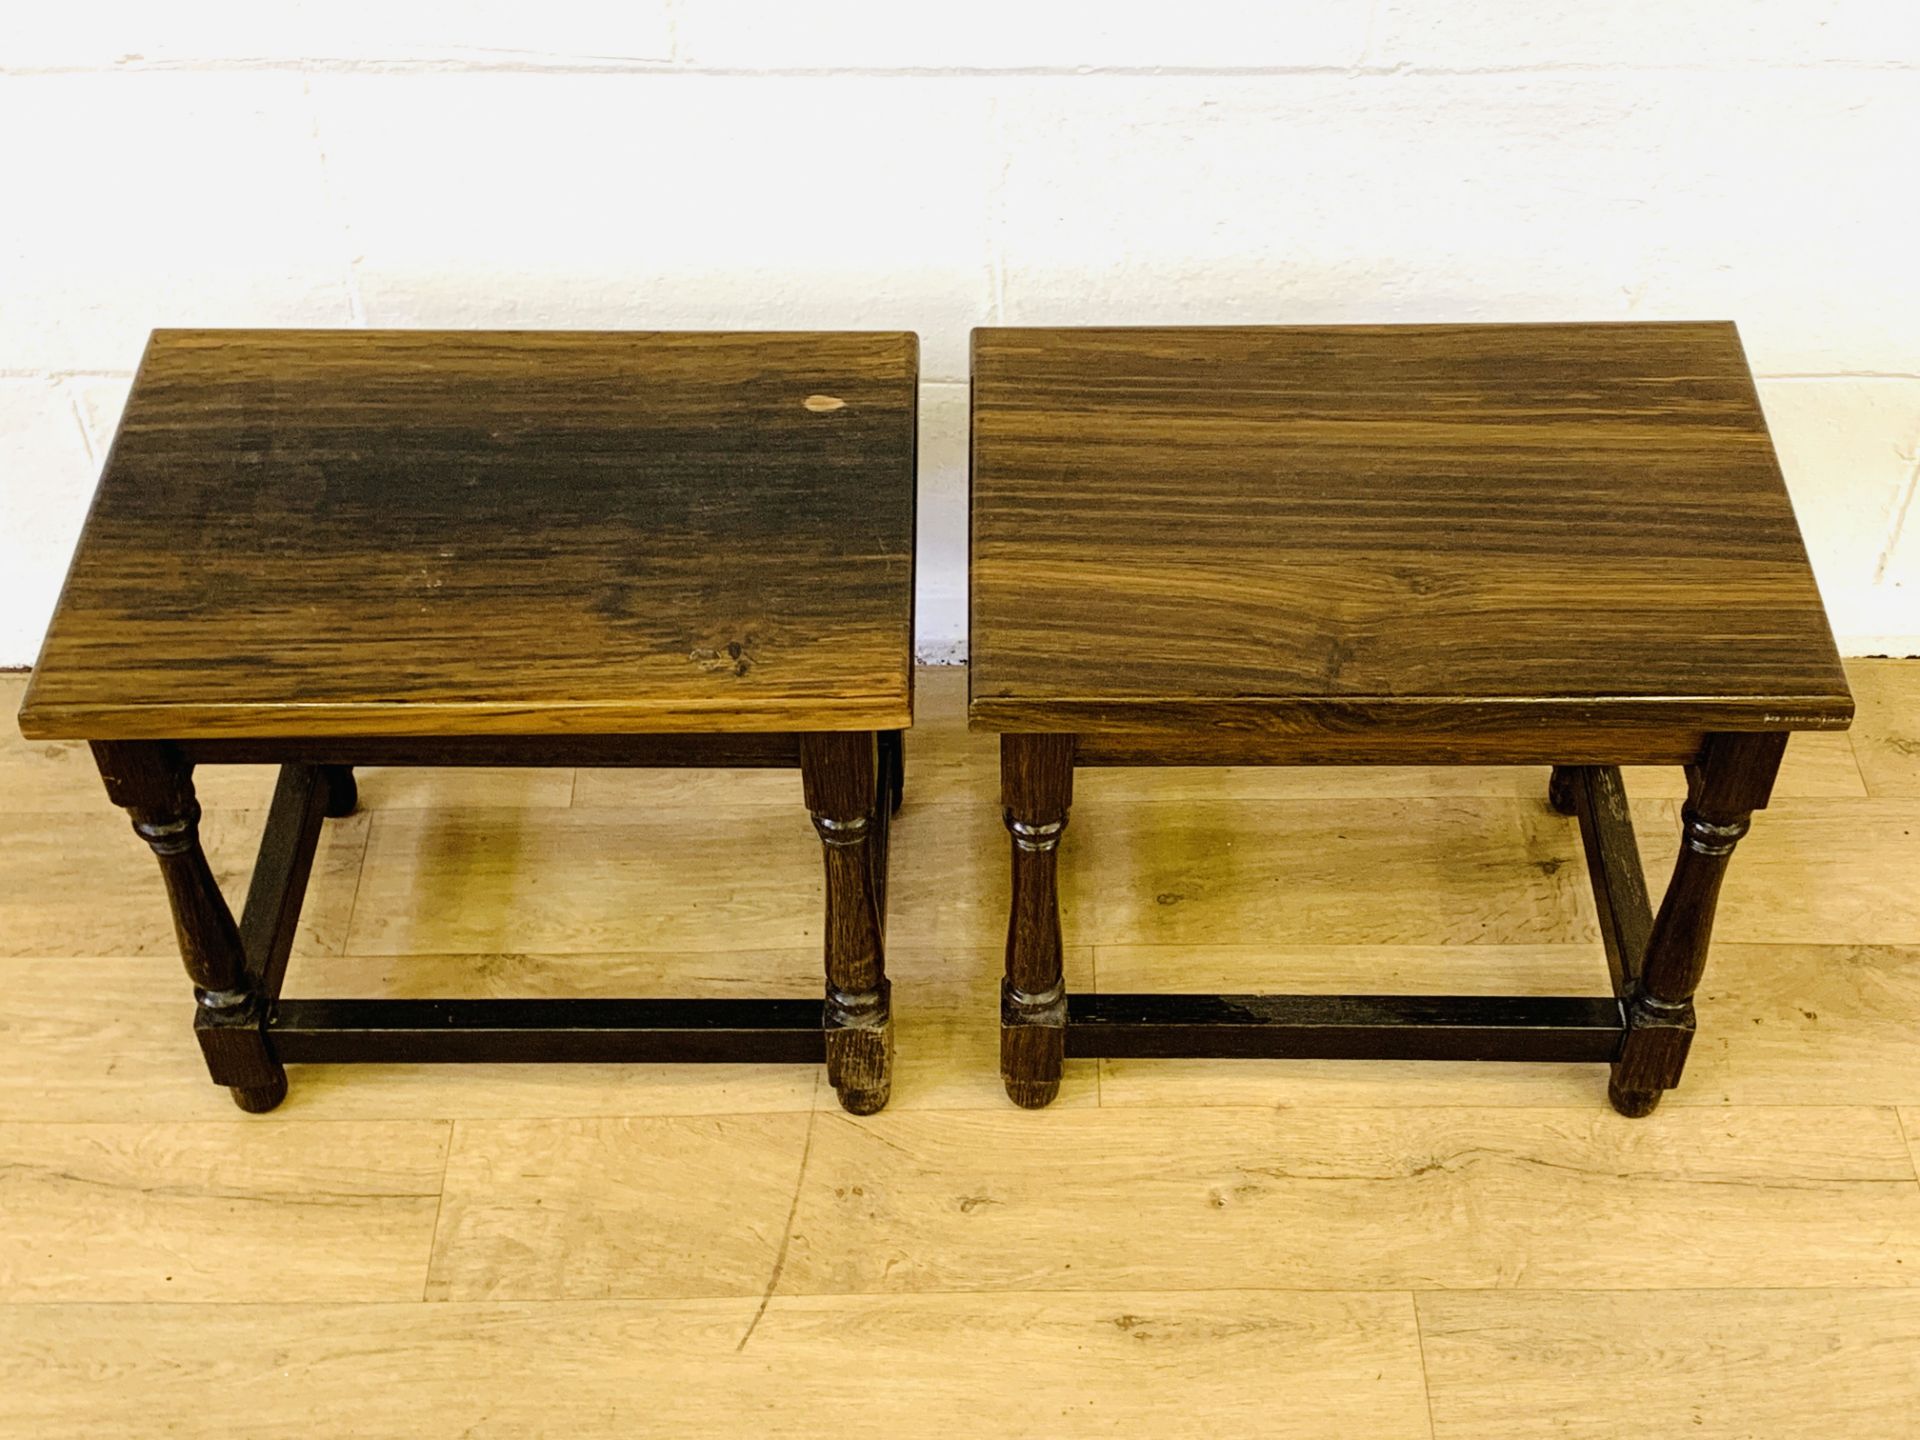 Two bog oak side tables - Image 4 of 4